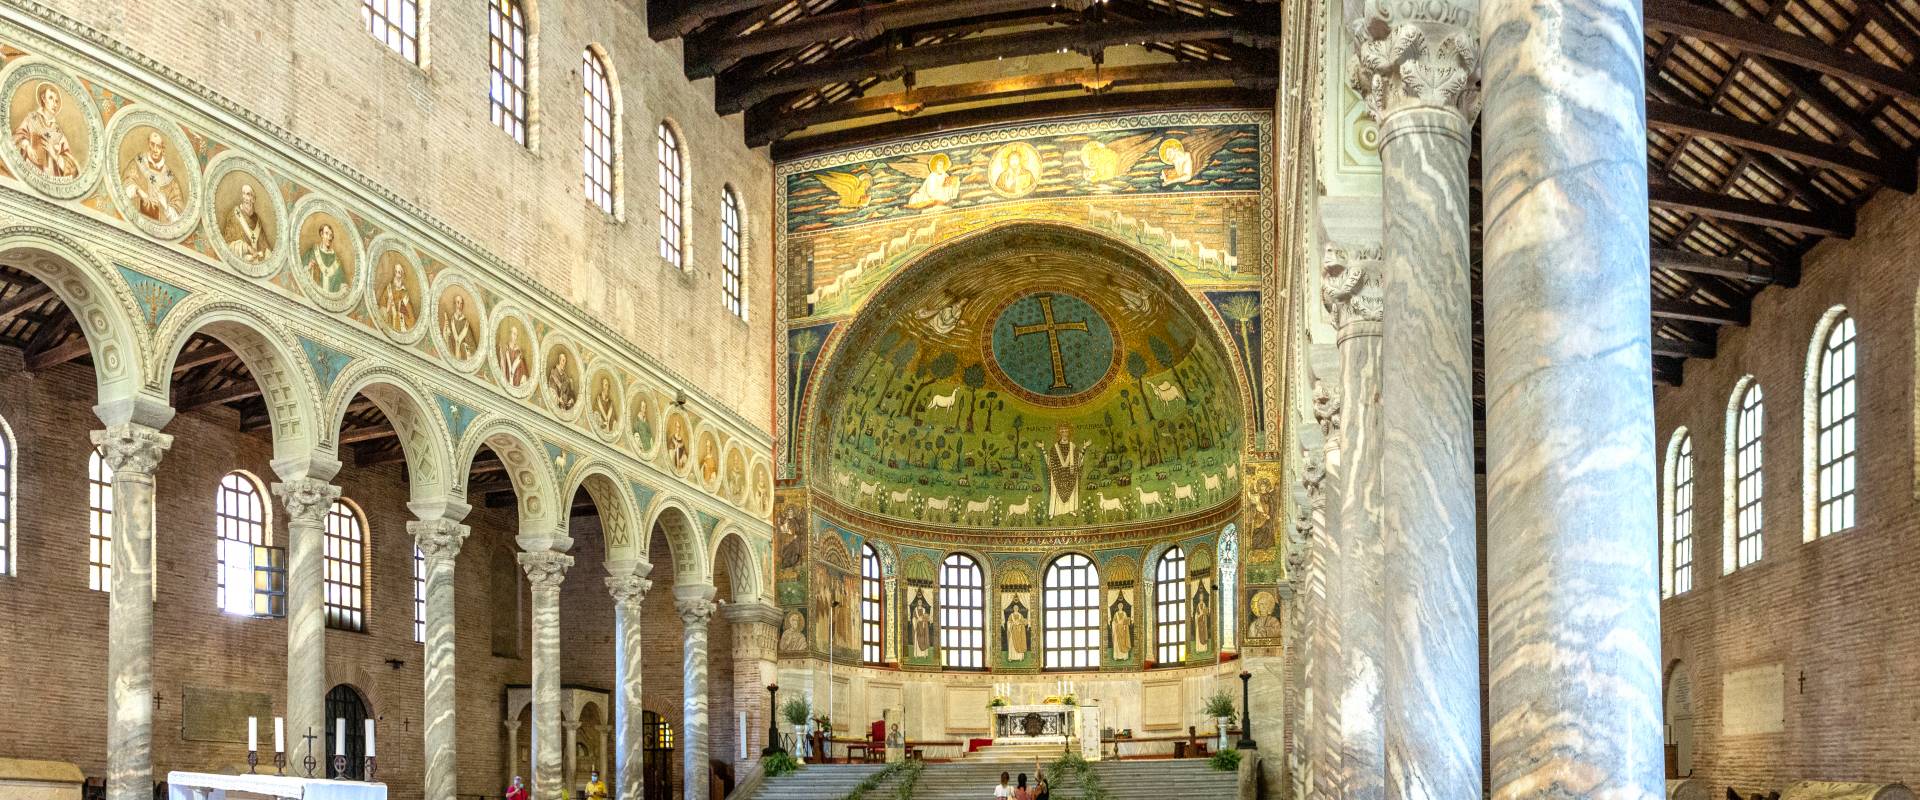 F007007 Basilica di Sant'Apollinare in Classe - Ravenna - foto di Vanni Lazzari